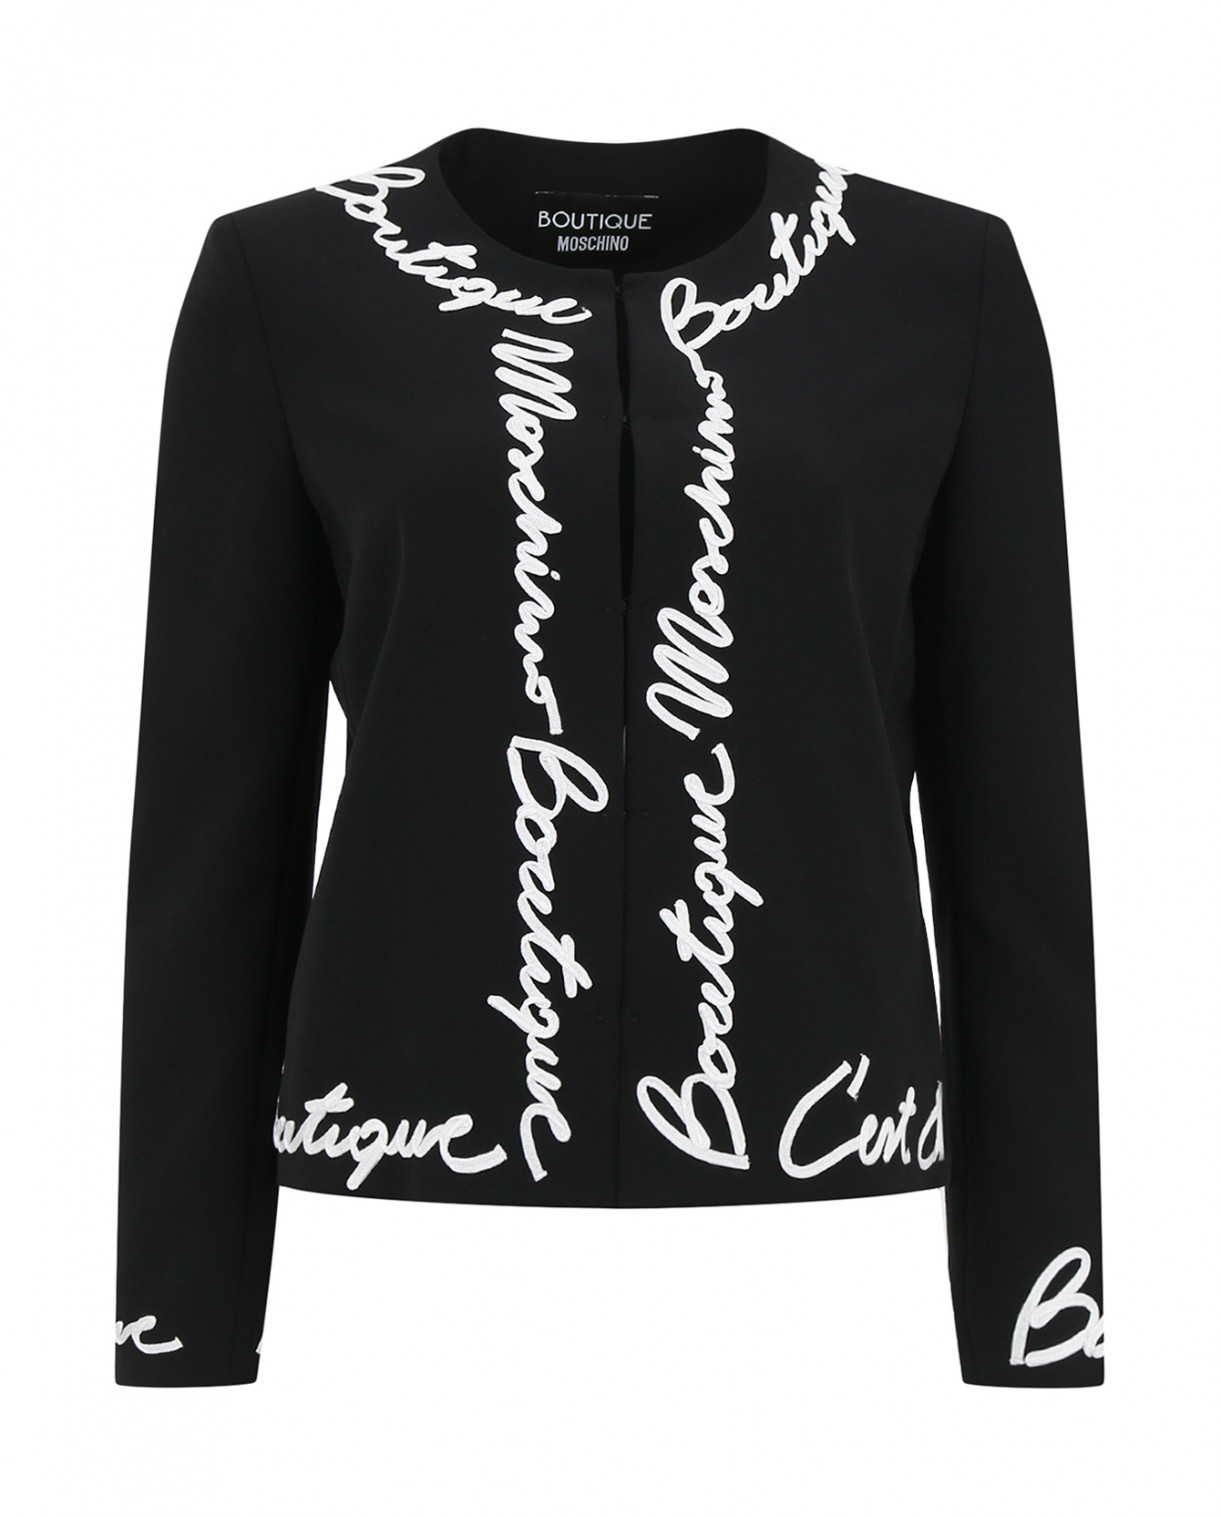 Жакет декорированный вышивкой Moschino Boutique  –  Общий вид  – Цвет:  Черный